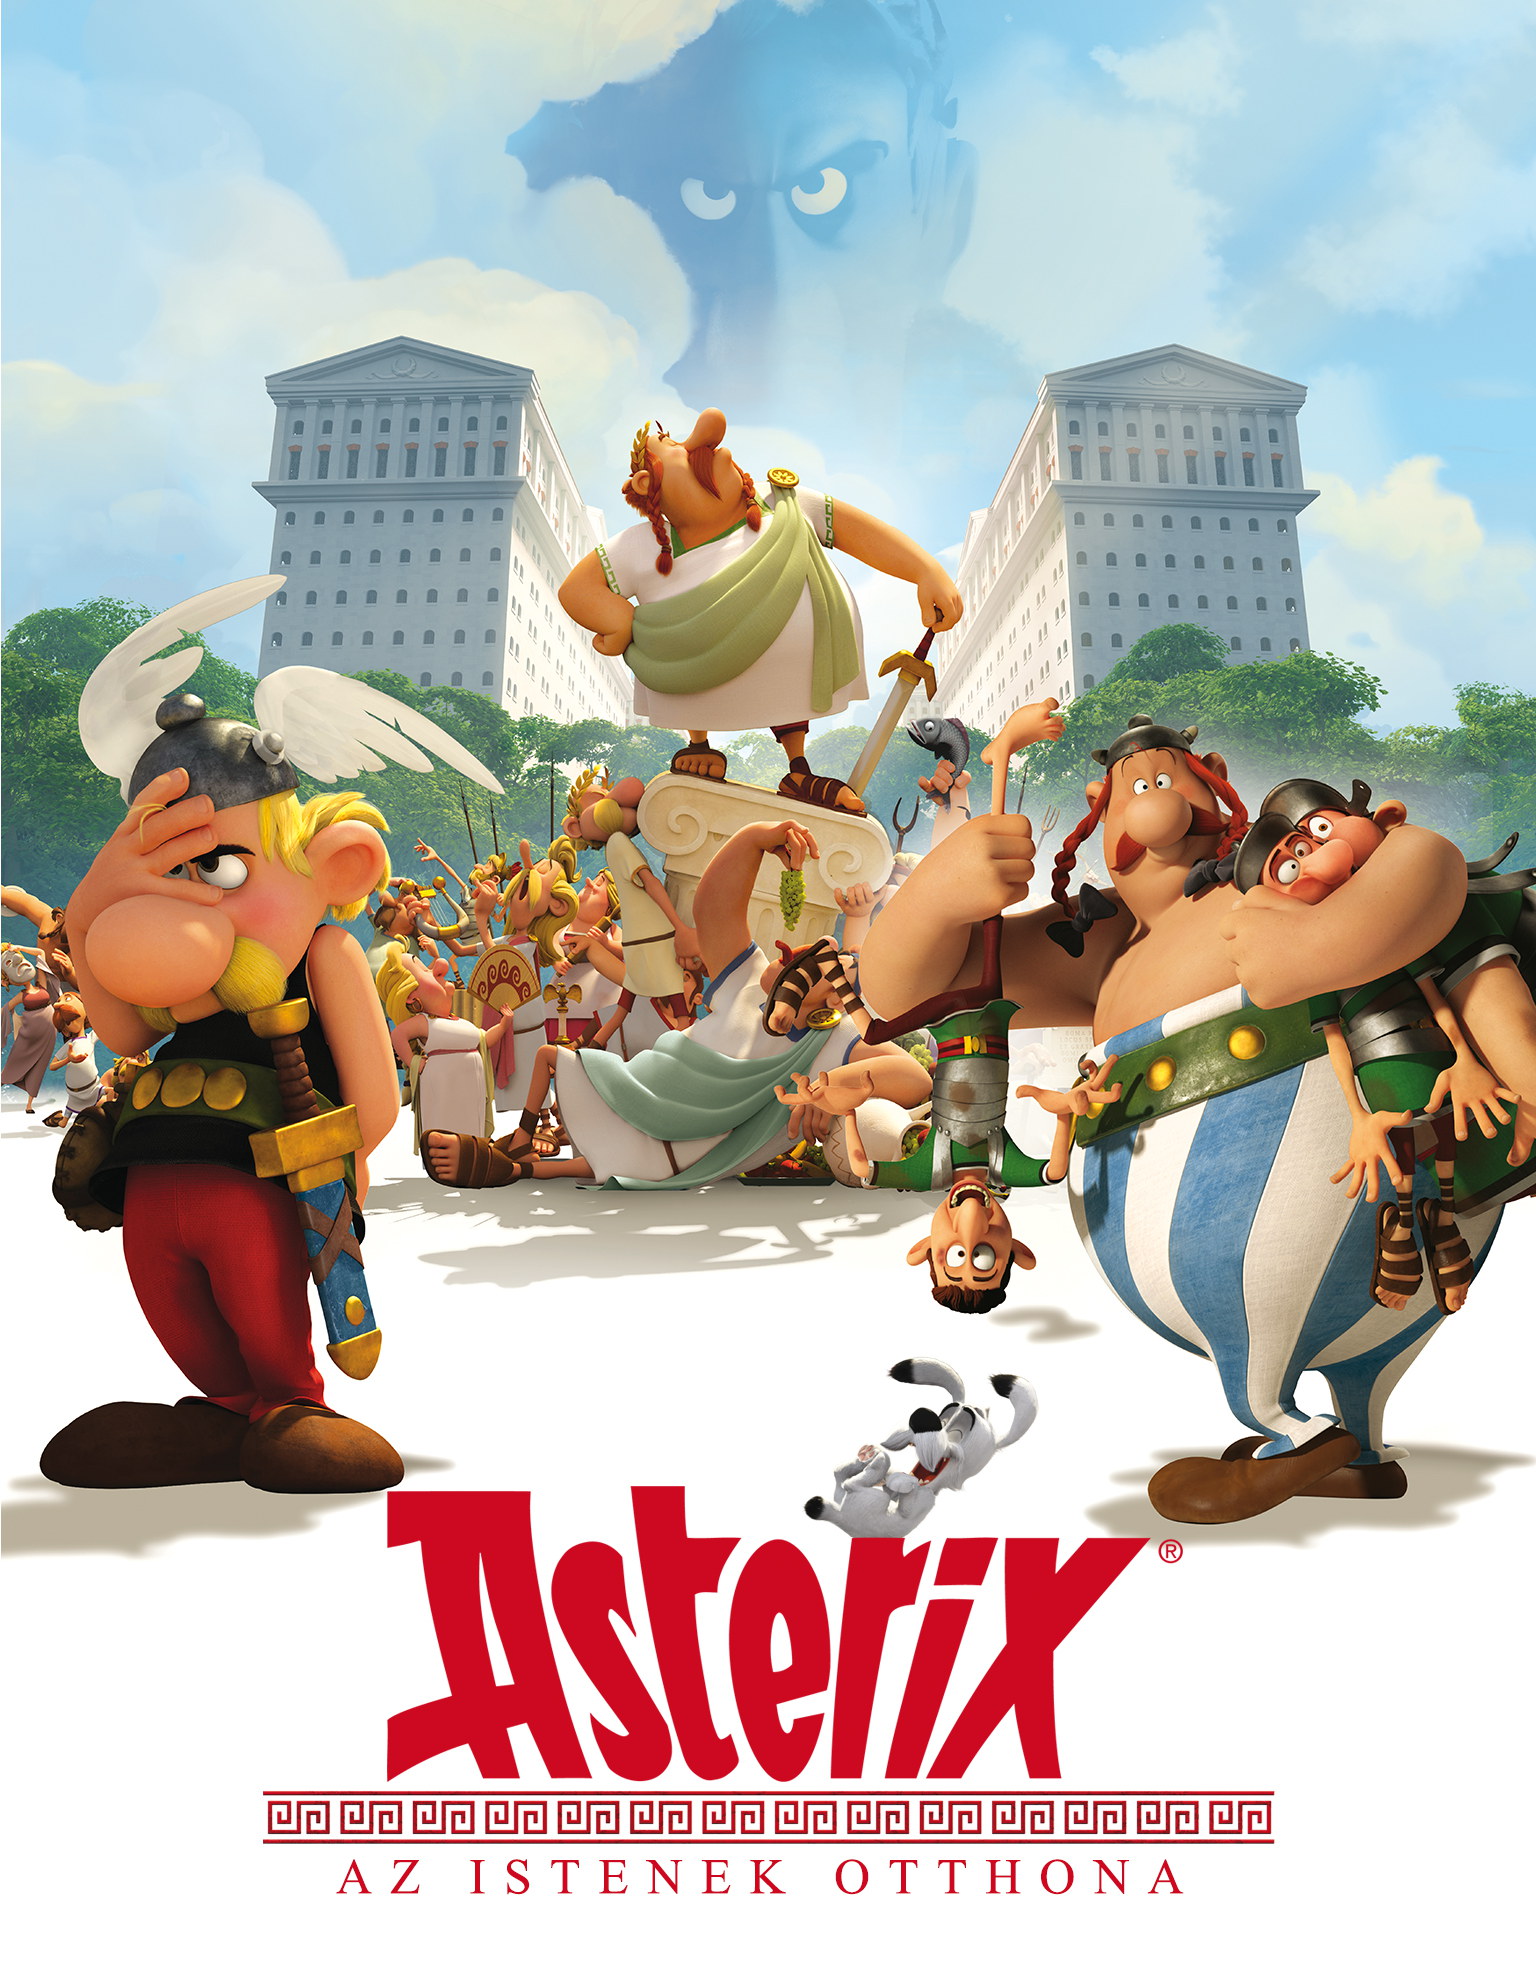 asterix-az-istenek-otthona-thumb-meselandia.jpg